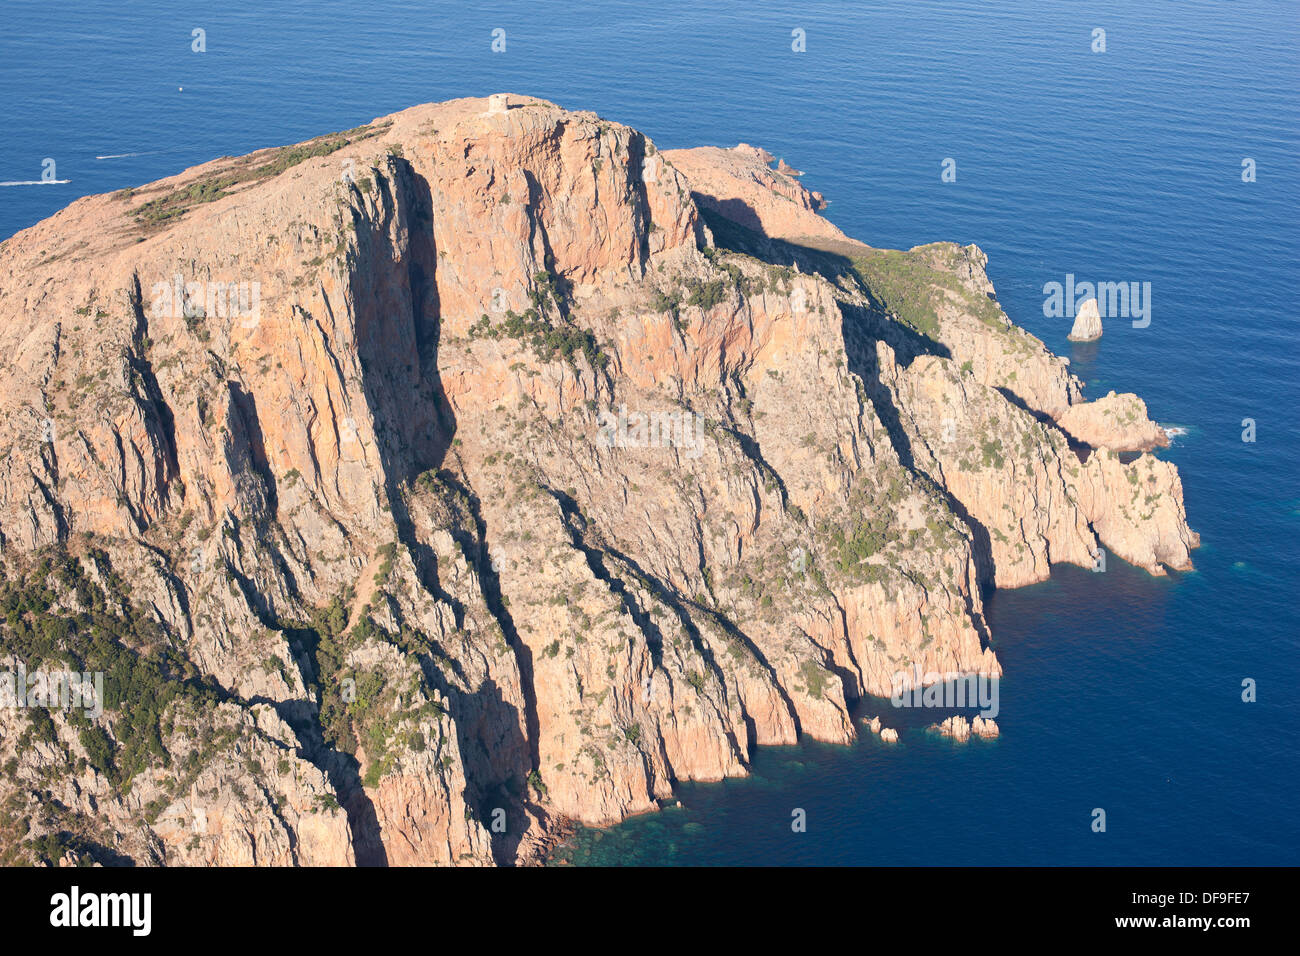 LUFTAUFNAHME. Felsvorsprung, gekrönt von einem genuesischen Turm, 331 Meter hoch über dem Mittelmeer. Capo Rosso, aka Capu Rossu, Korsika, Frankreich. Stockfoto